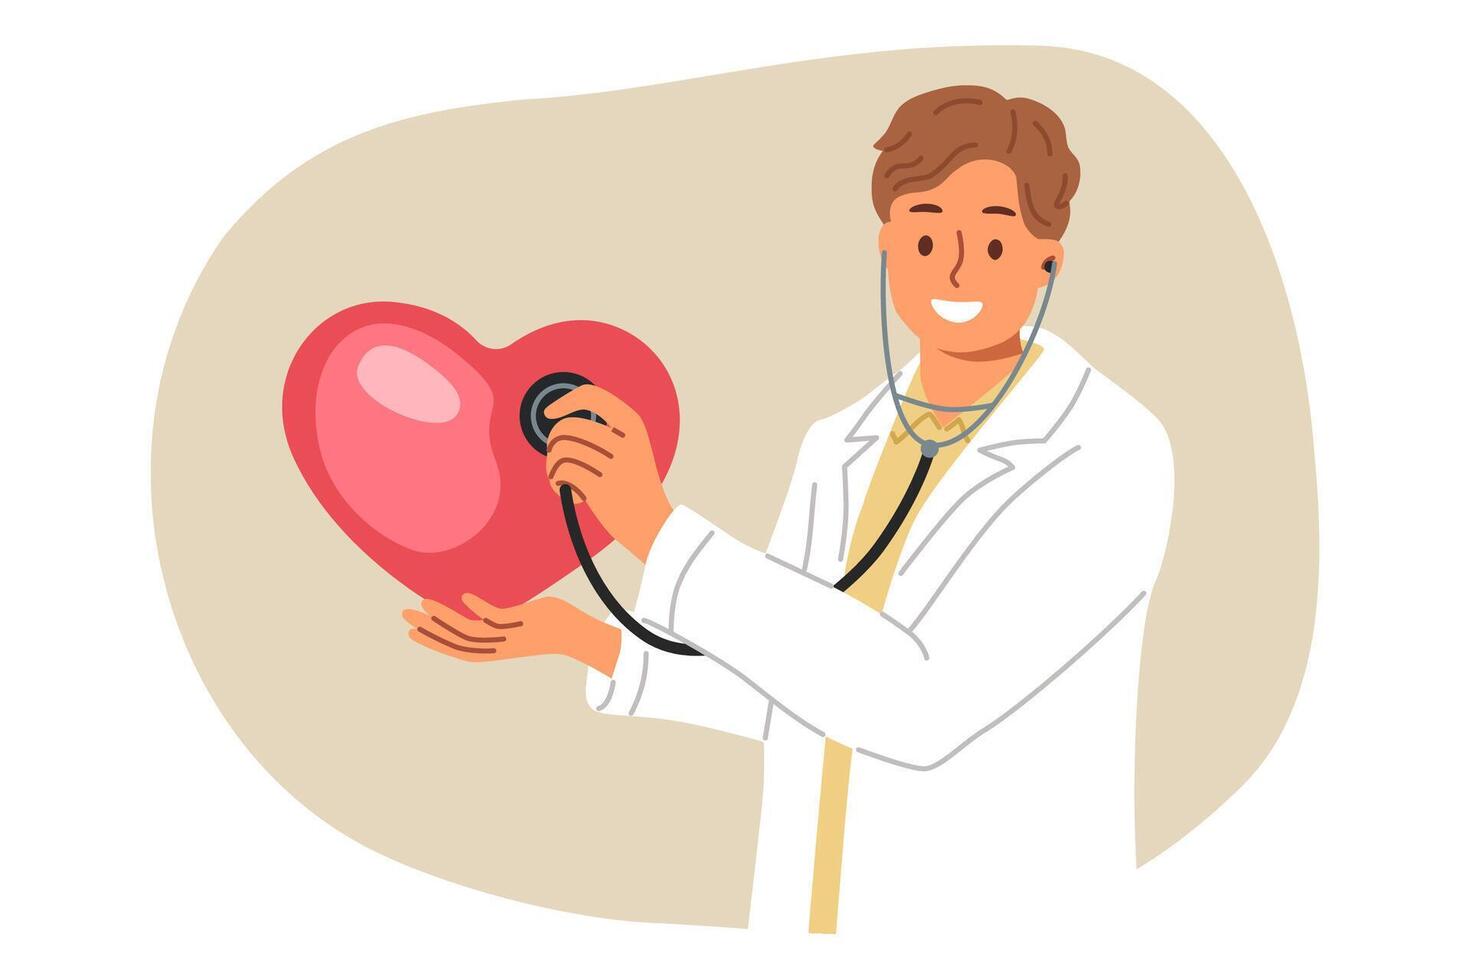 man läkare med stetoskop i händer innehar stor hjärta, ger lektion på regler av diagnos för människor med konditionsträning sjukdom. läkare behandlar konditionsträning problem i patienter med patologisk symptom vektor